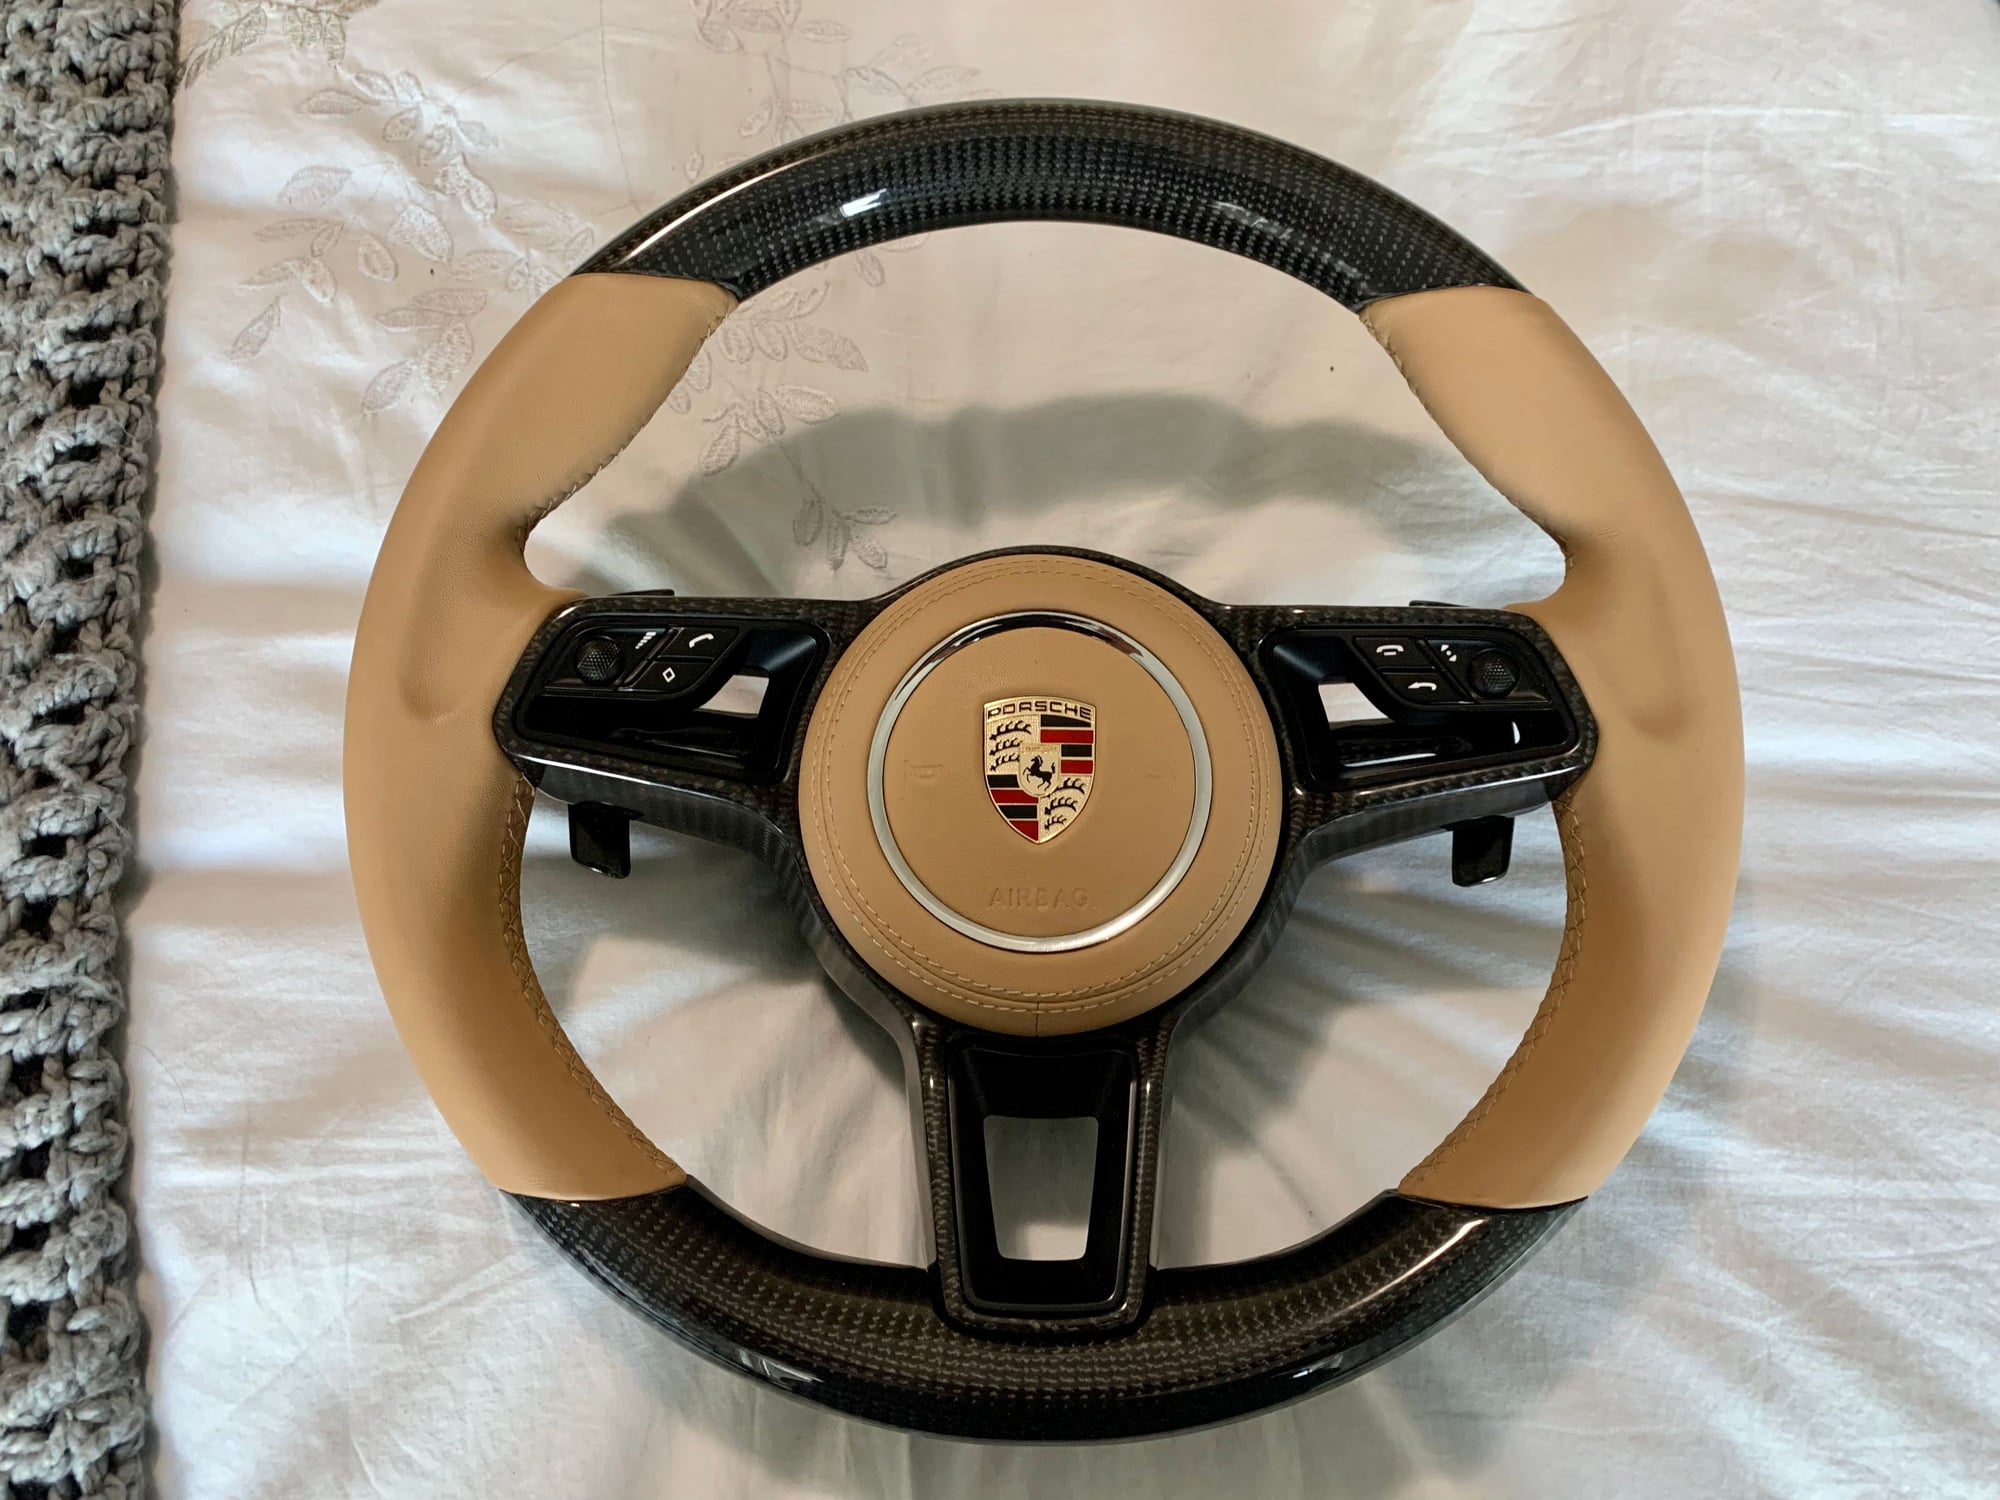 Steering/Suspension - Custom 991.2 Carbon Steering w Airbag (Sand beige) - New - 0  All Models - Brampton, ON L6Y6C5, Canada